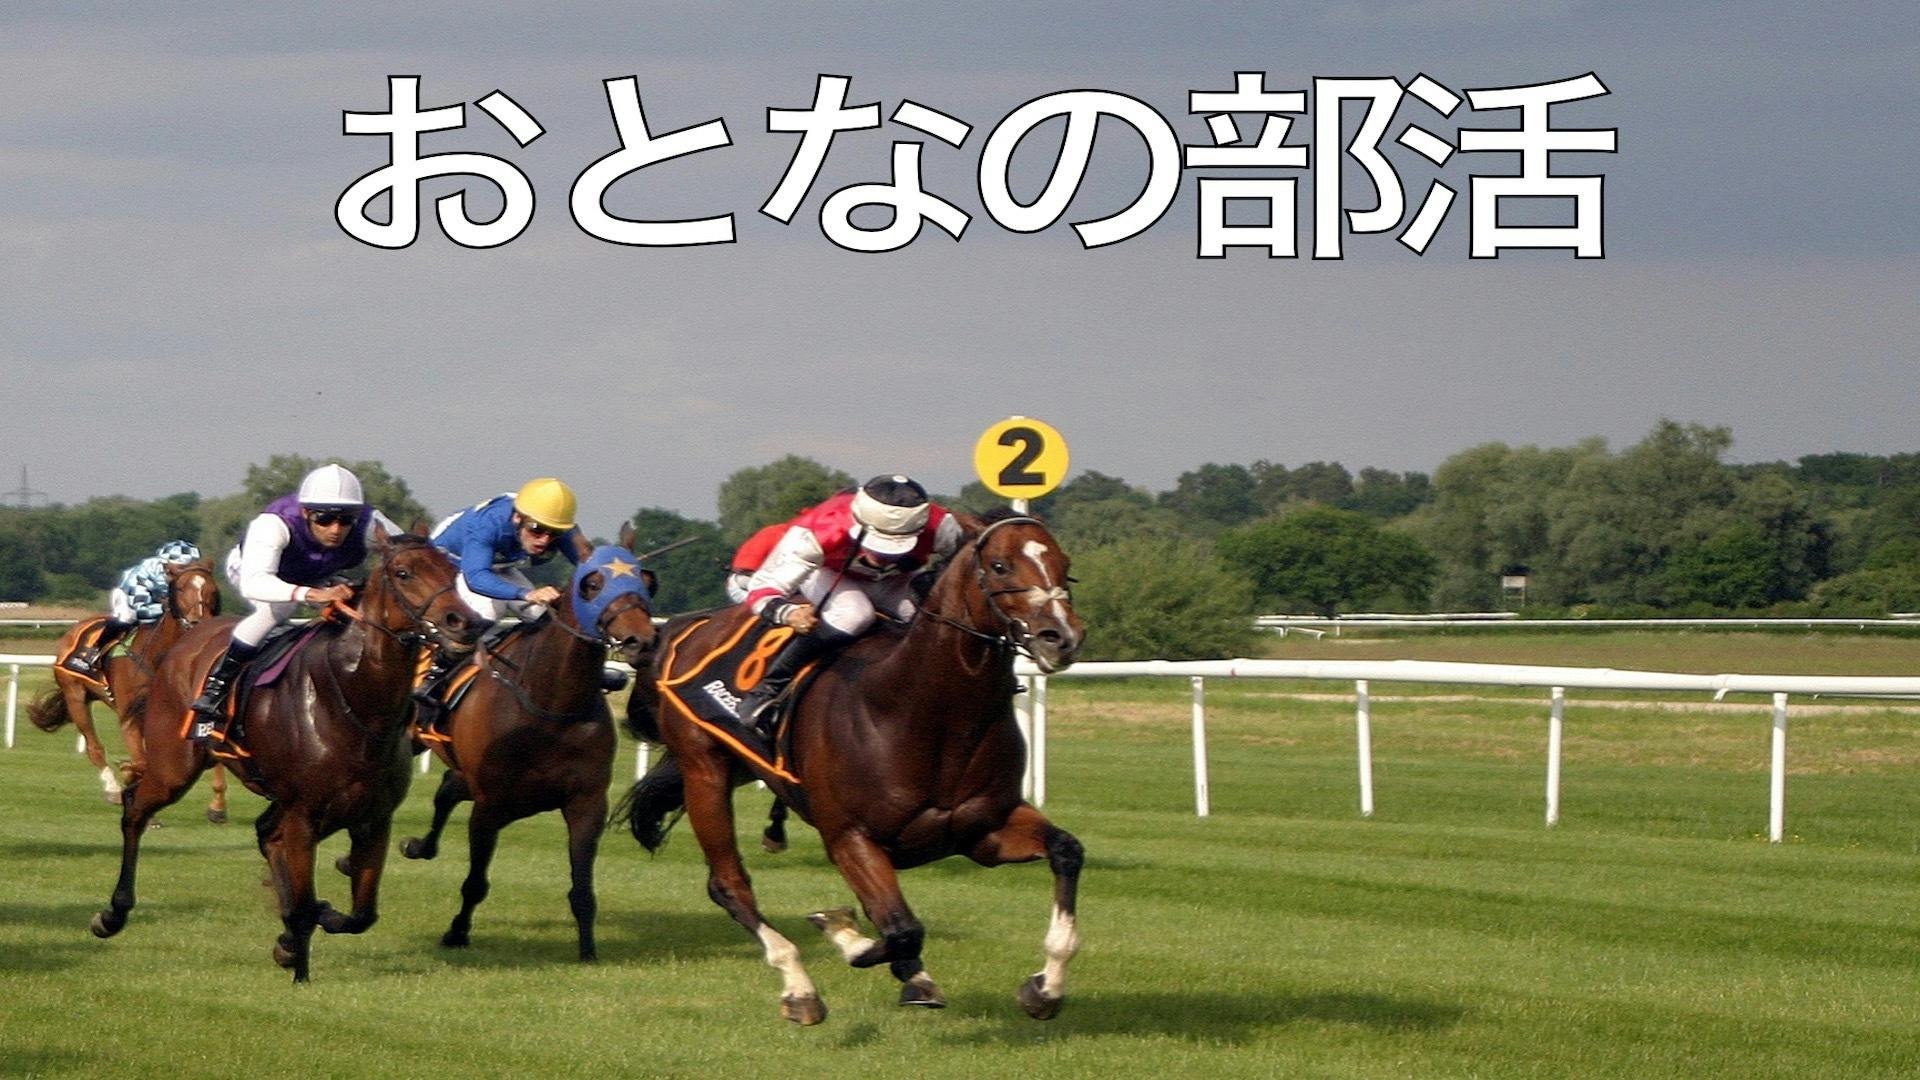 大阪競馬ストーリー - おとなの部活〜競馬好きな中高年が人生を楽しく生きるためのサードプレイス - DMMオンラインサロン